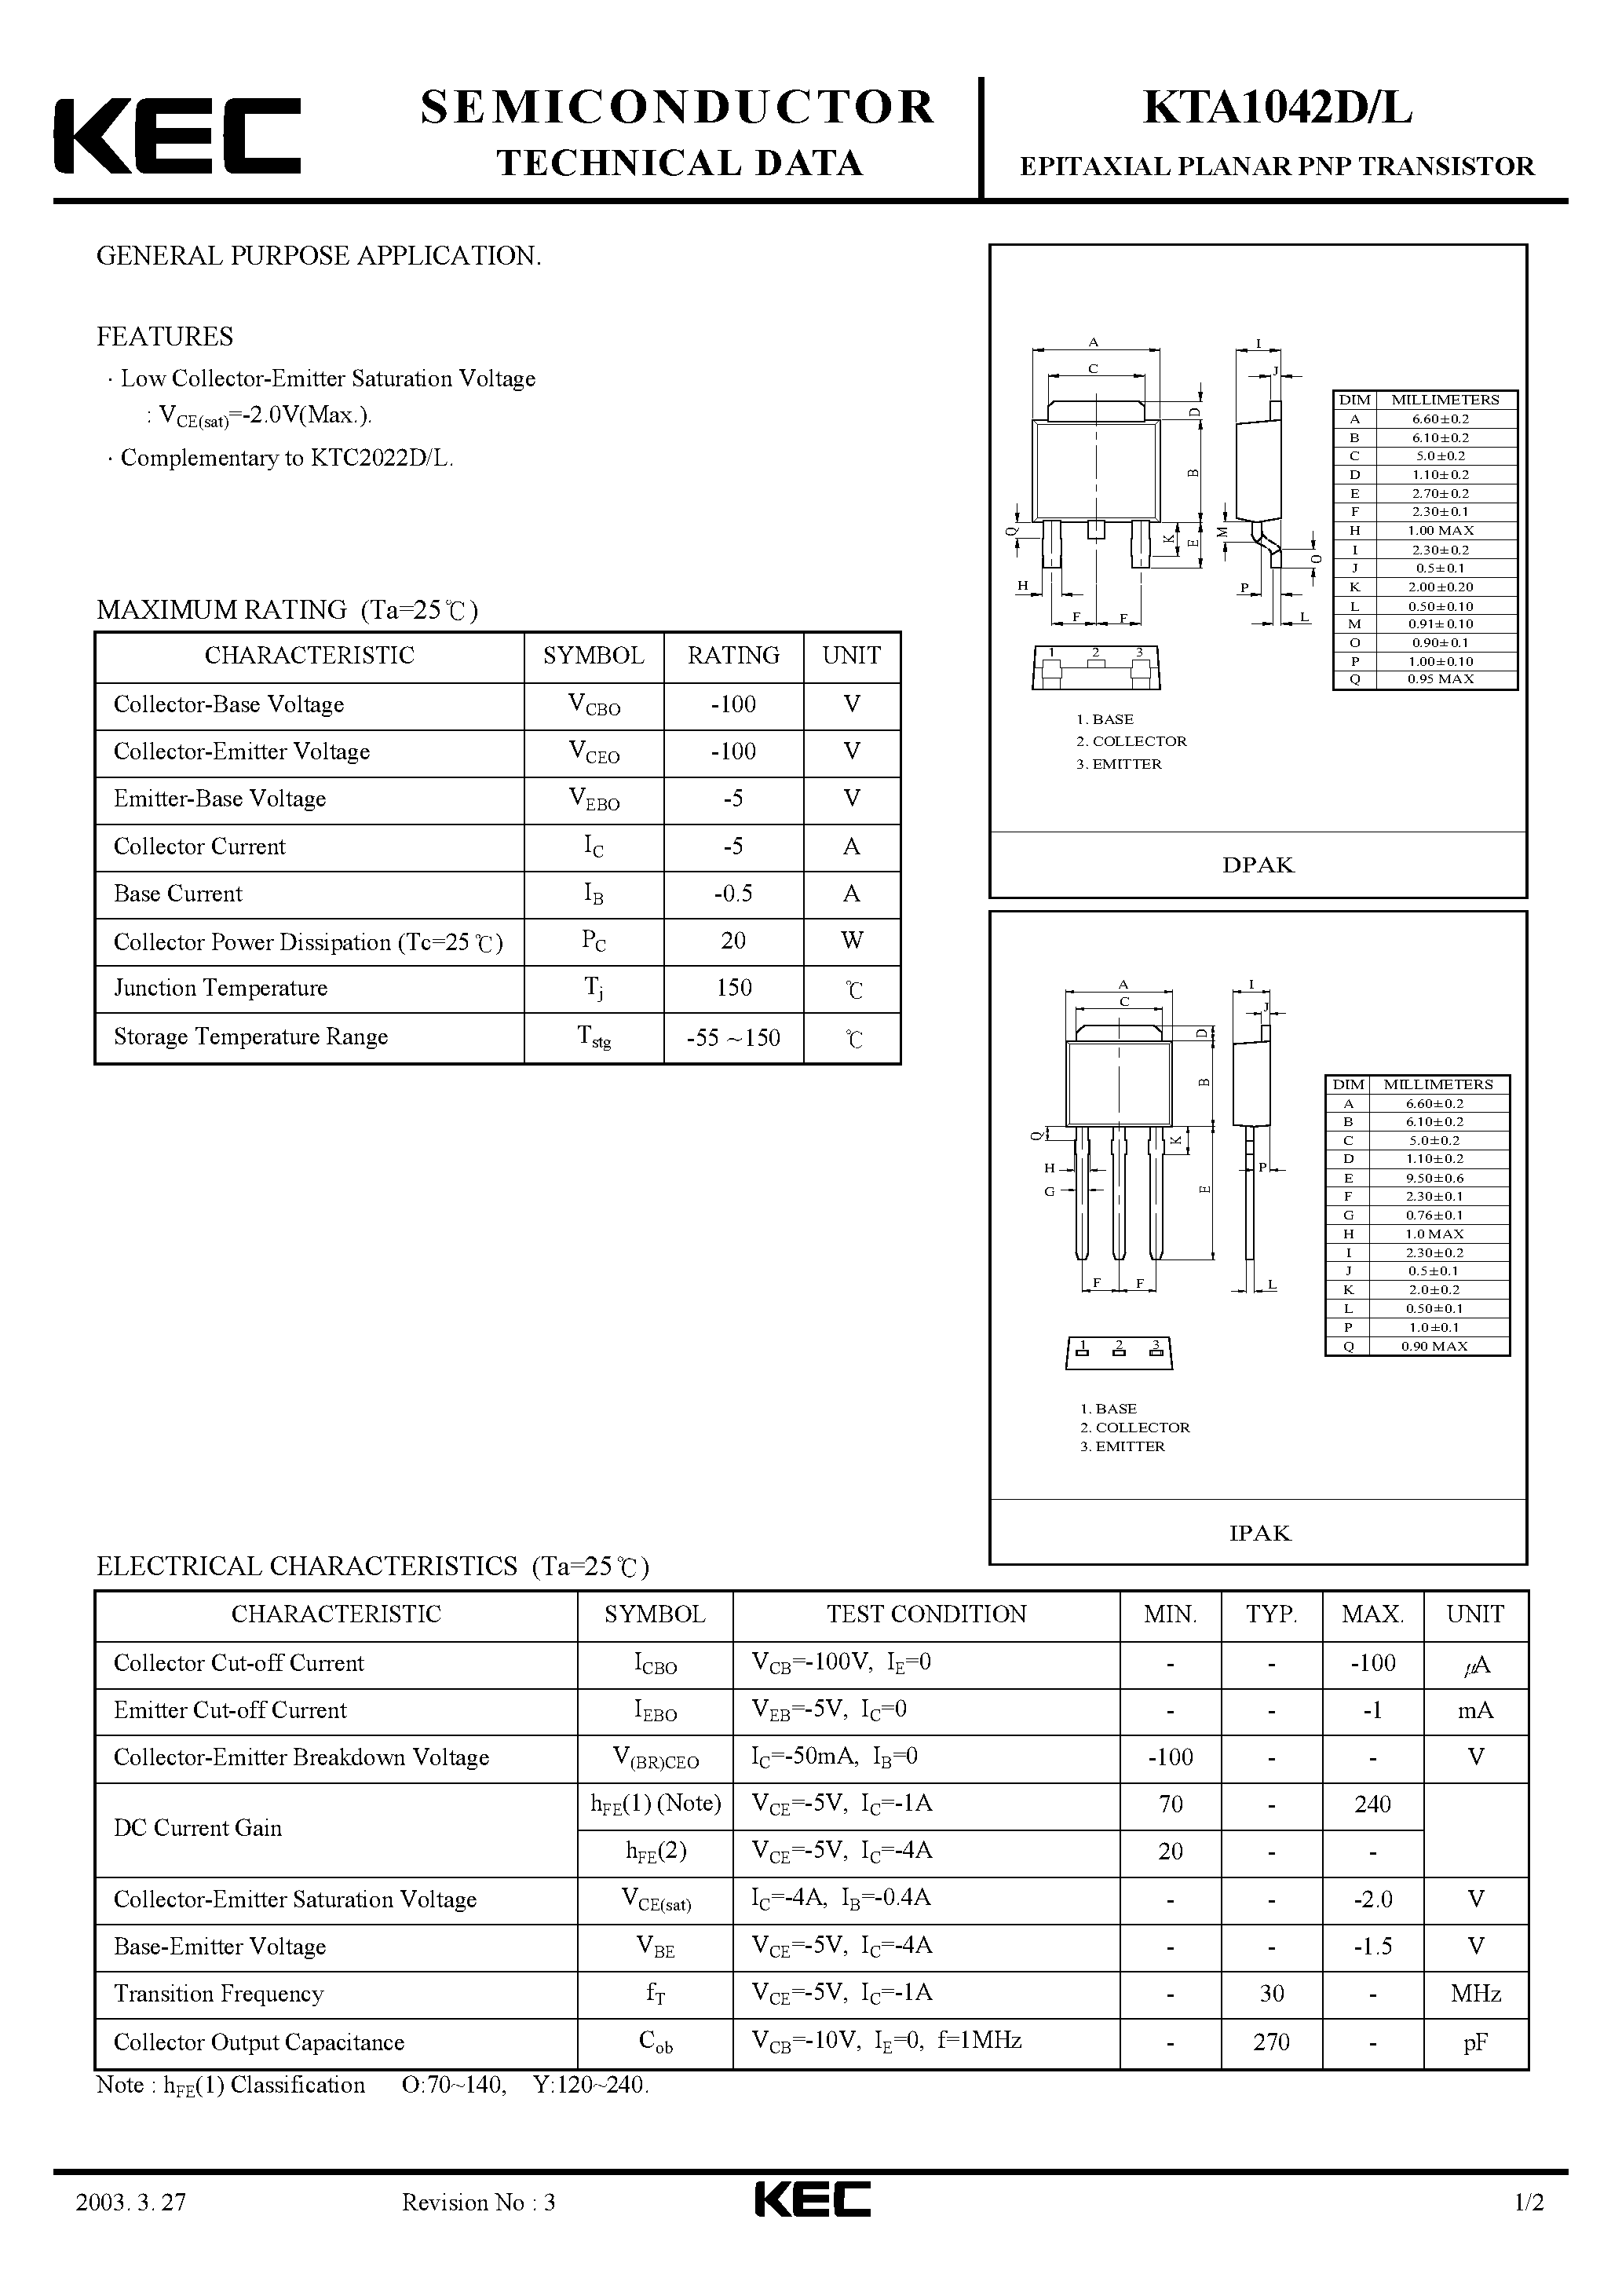 Datasheet KTA1042 - EPITAXIAL PLANAR PNP TRANSISTOR (GENERAL PURPOSE) page 1